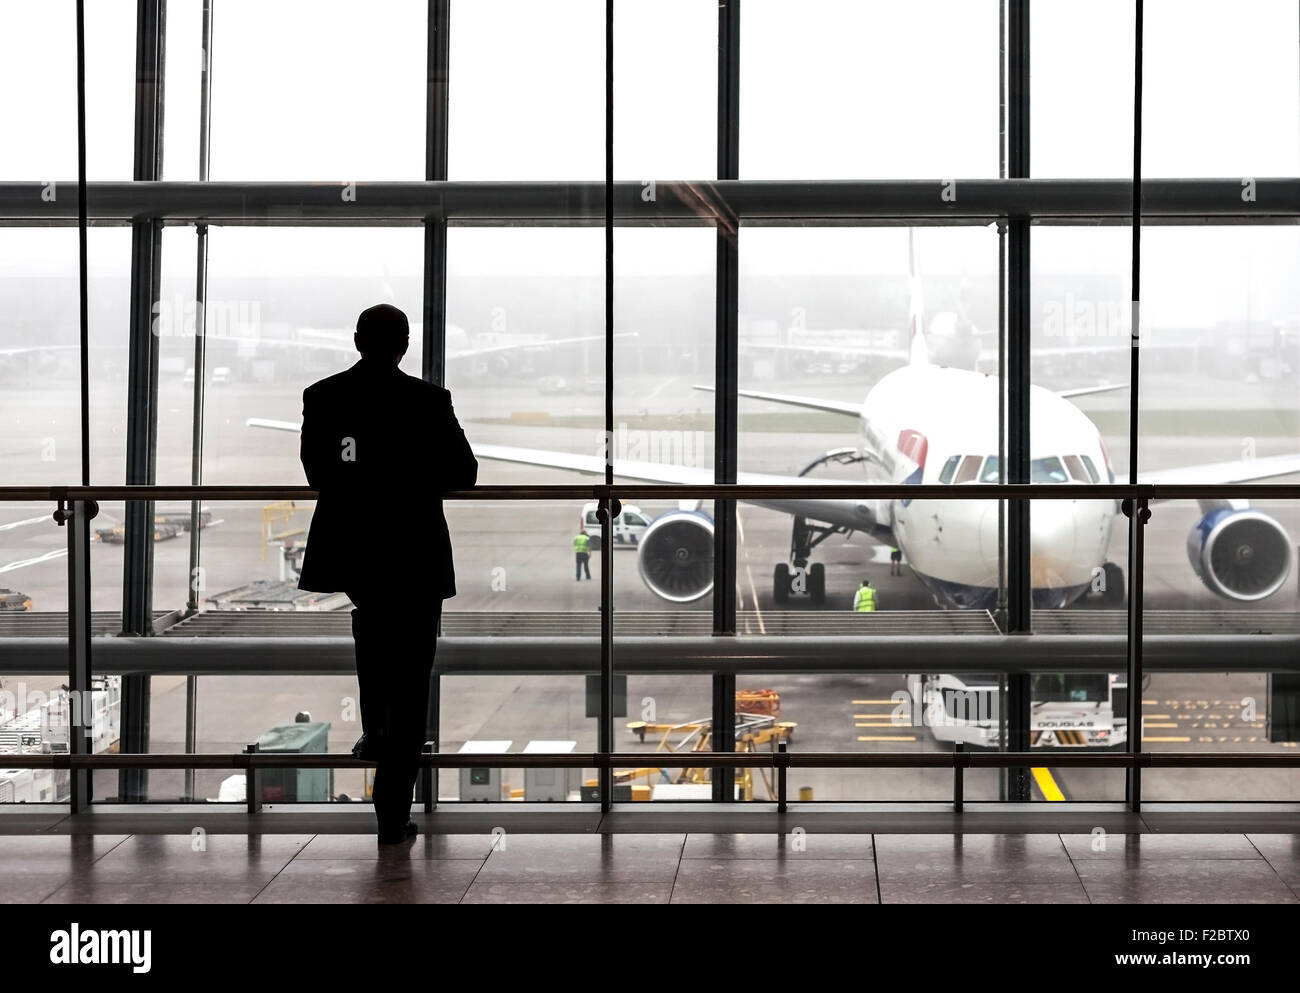 London, UK - 14. August 2015: Silhouette eines Reisenden warten auf ein Flugzeug in der Abflughalle Heathrow Flughafen an einem regnerischen Tag Stockfoto